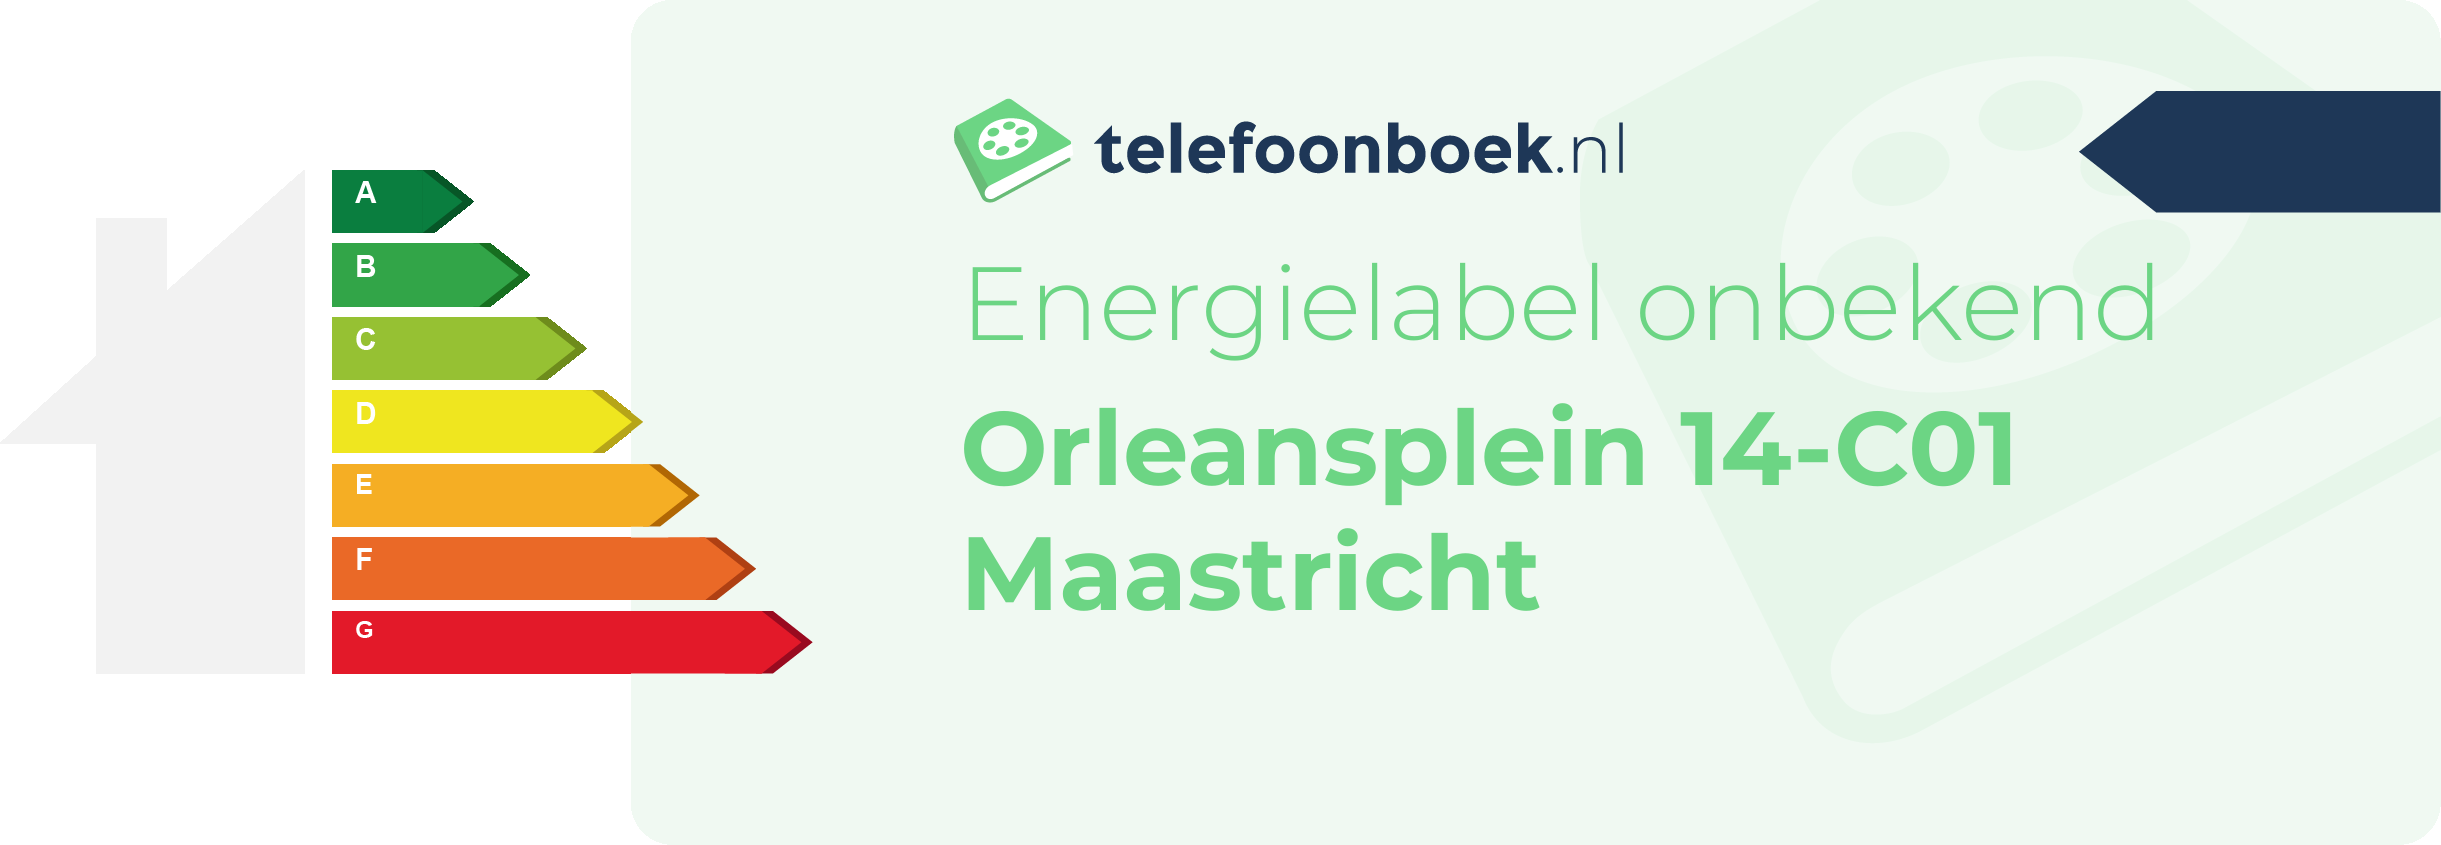 Energielabel Orleansplein 14-C01 Maastricht